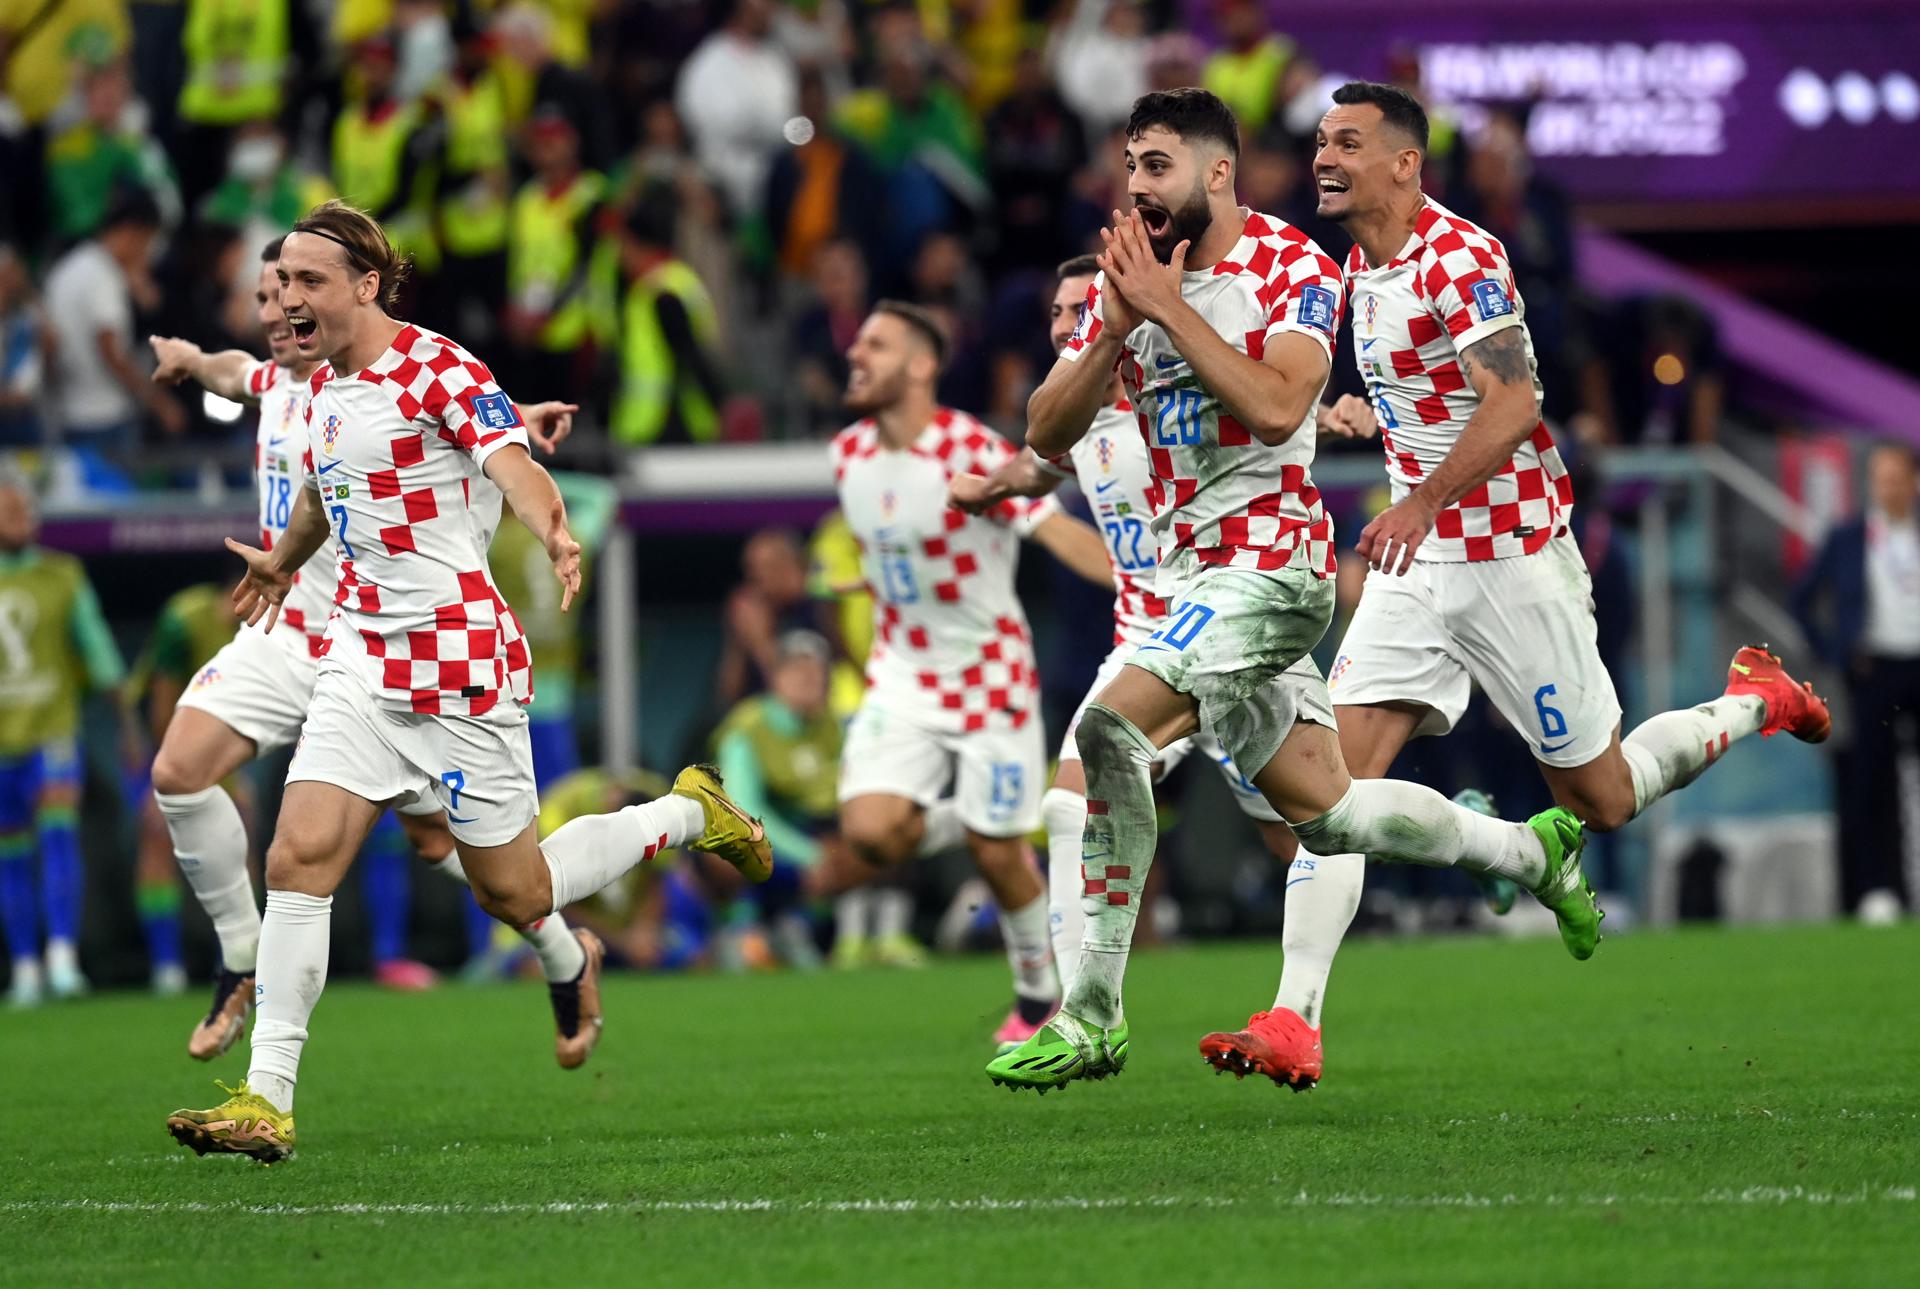 Jugadores de la Selección de Croacia celebrando el pase a semifinales tras derrotar a Brasil en la tanda de penales.